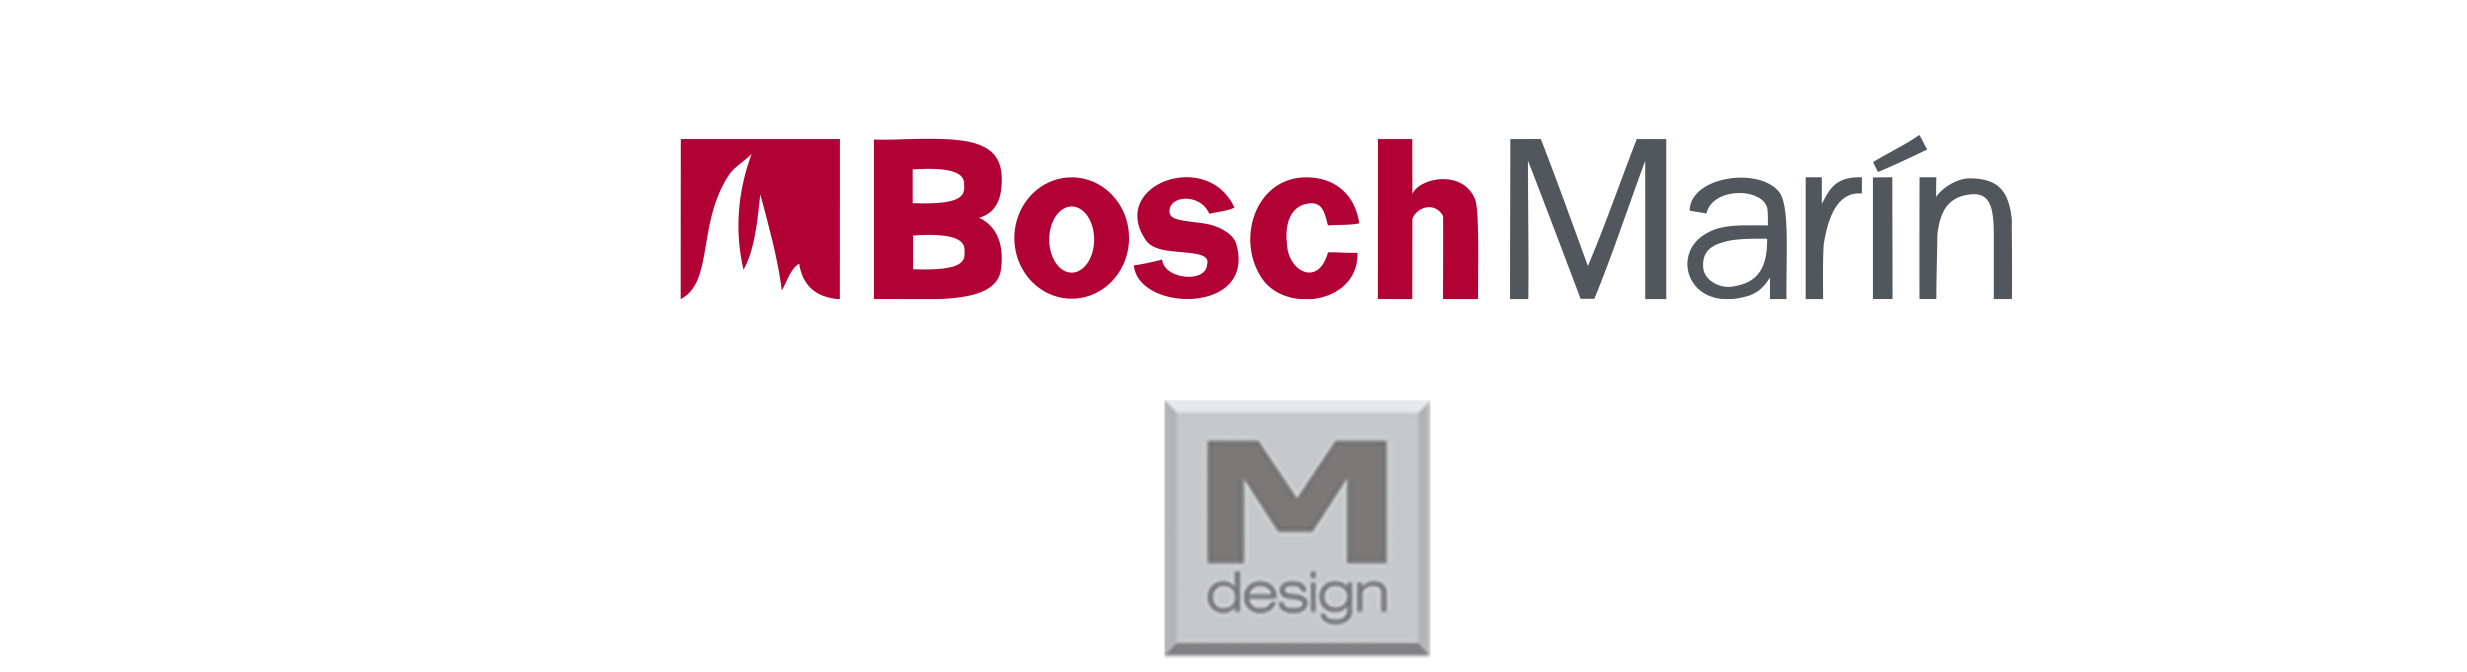 Logo Bosch Marin y MDesign